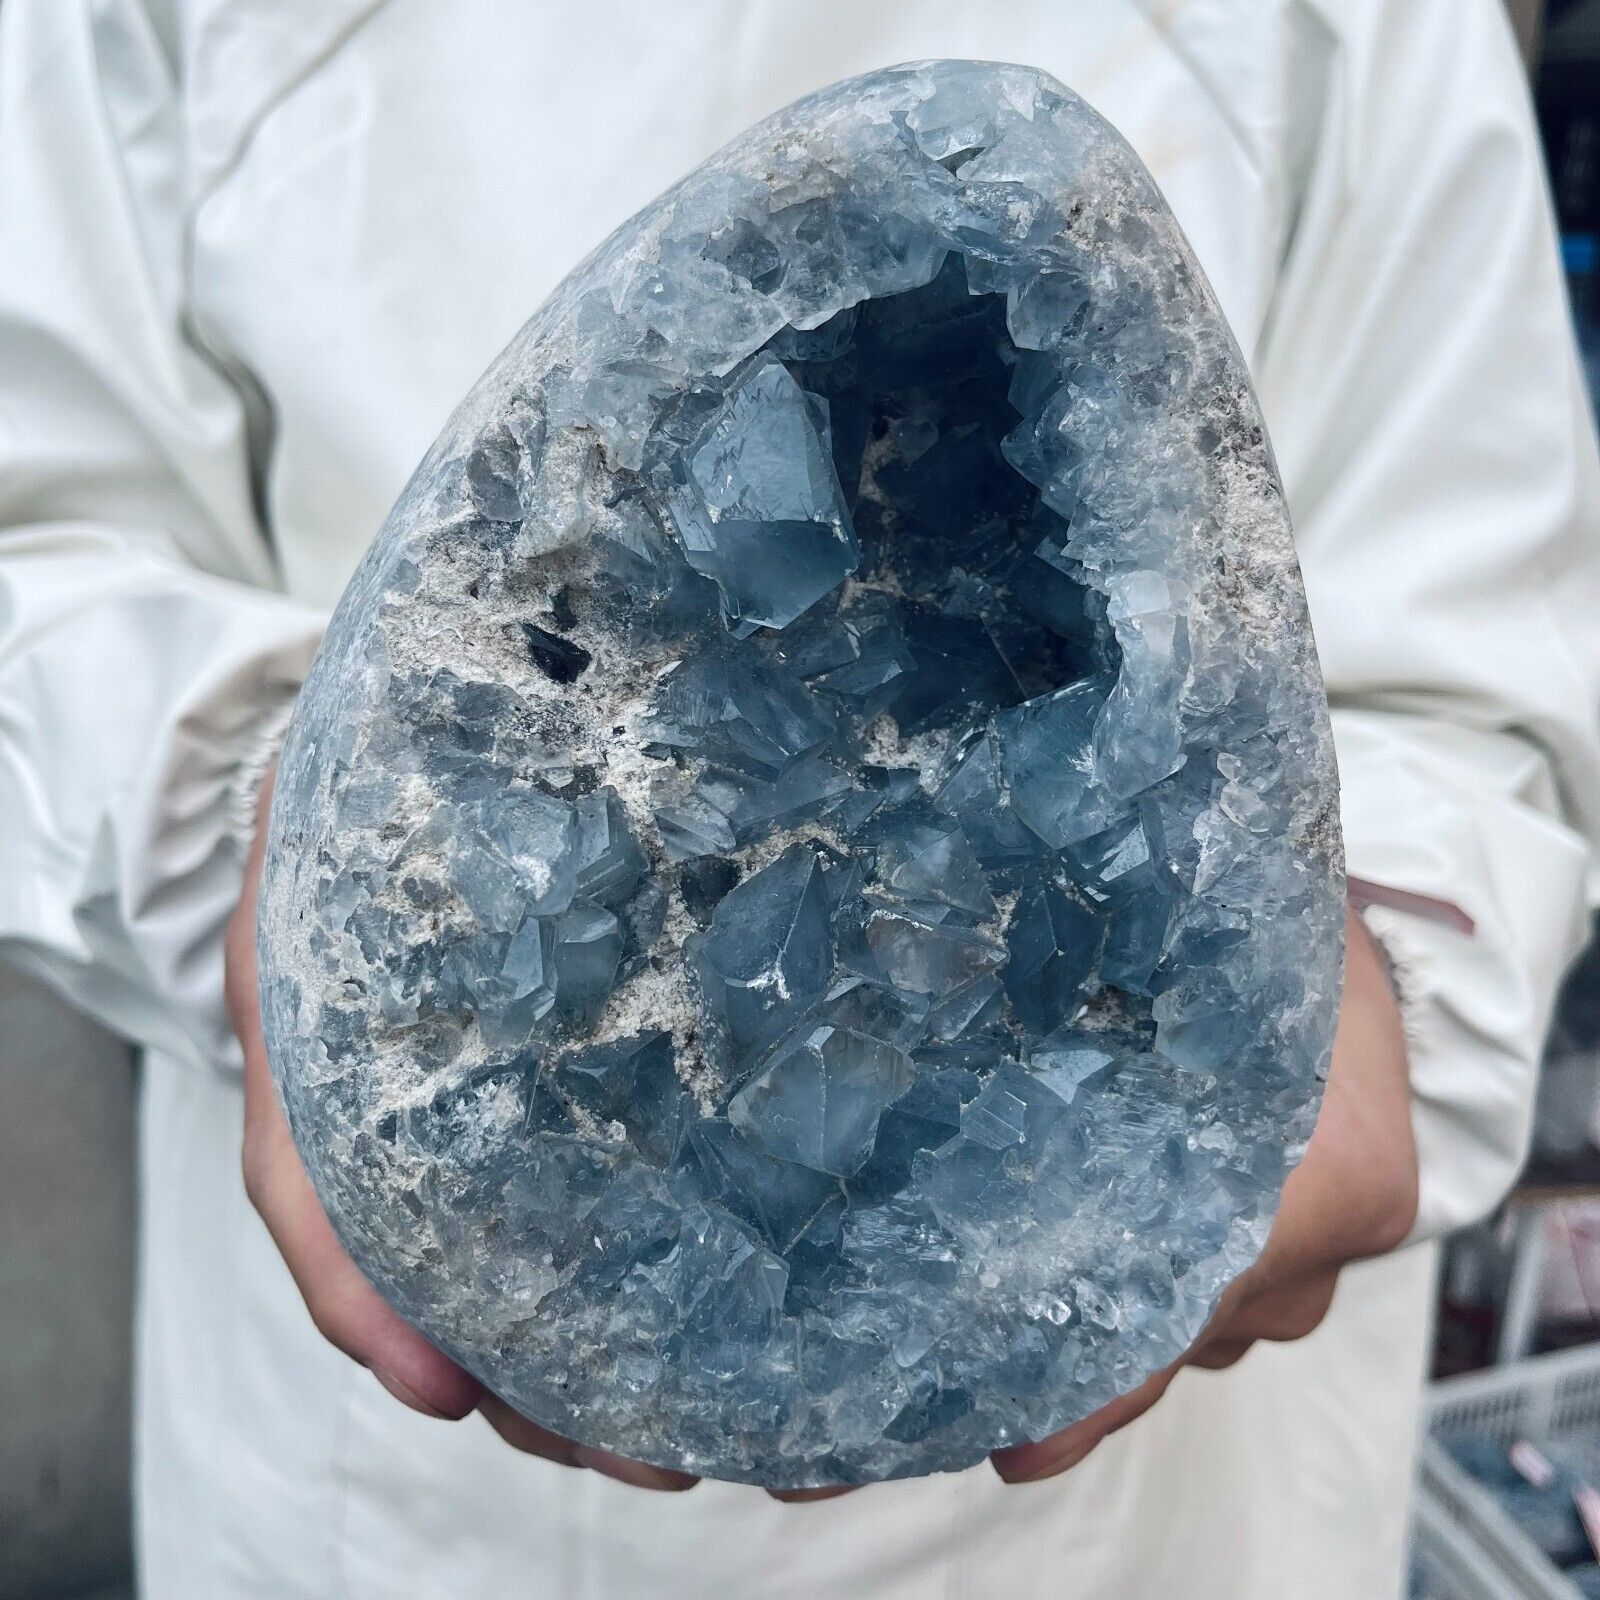 11lb Large Natural Blue Celestite Crystal Geode Quartz Cluster Mineral Specimen